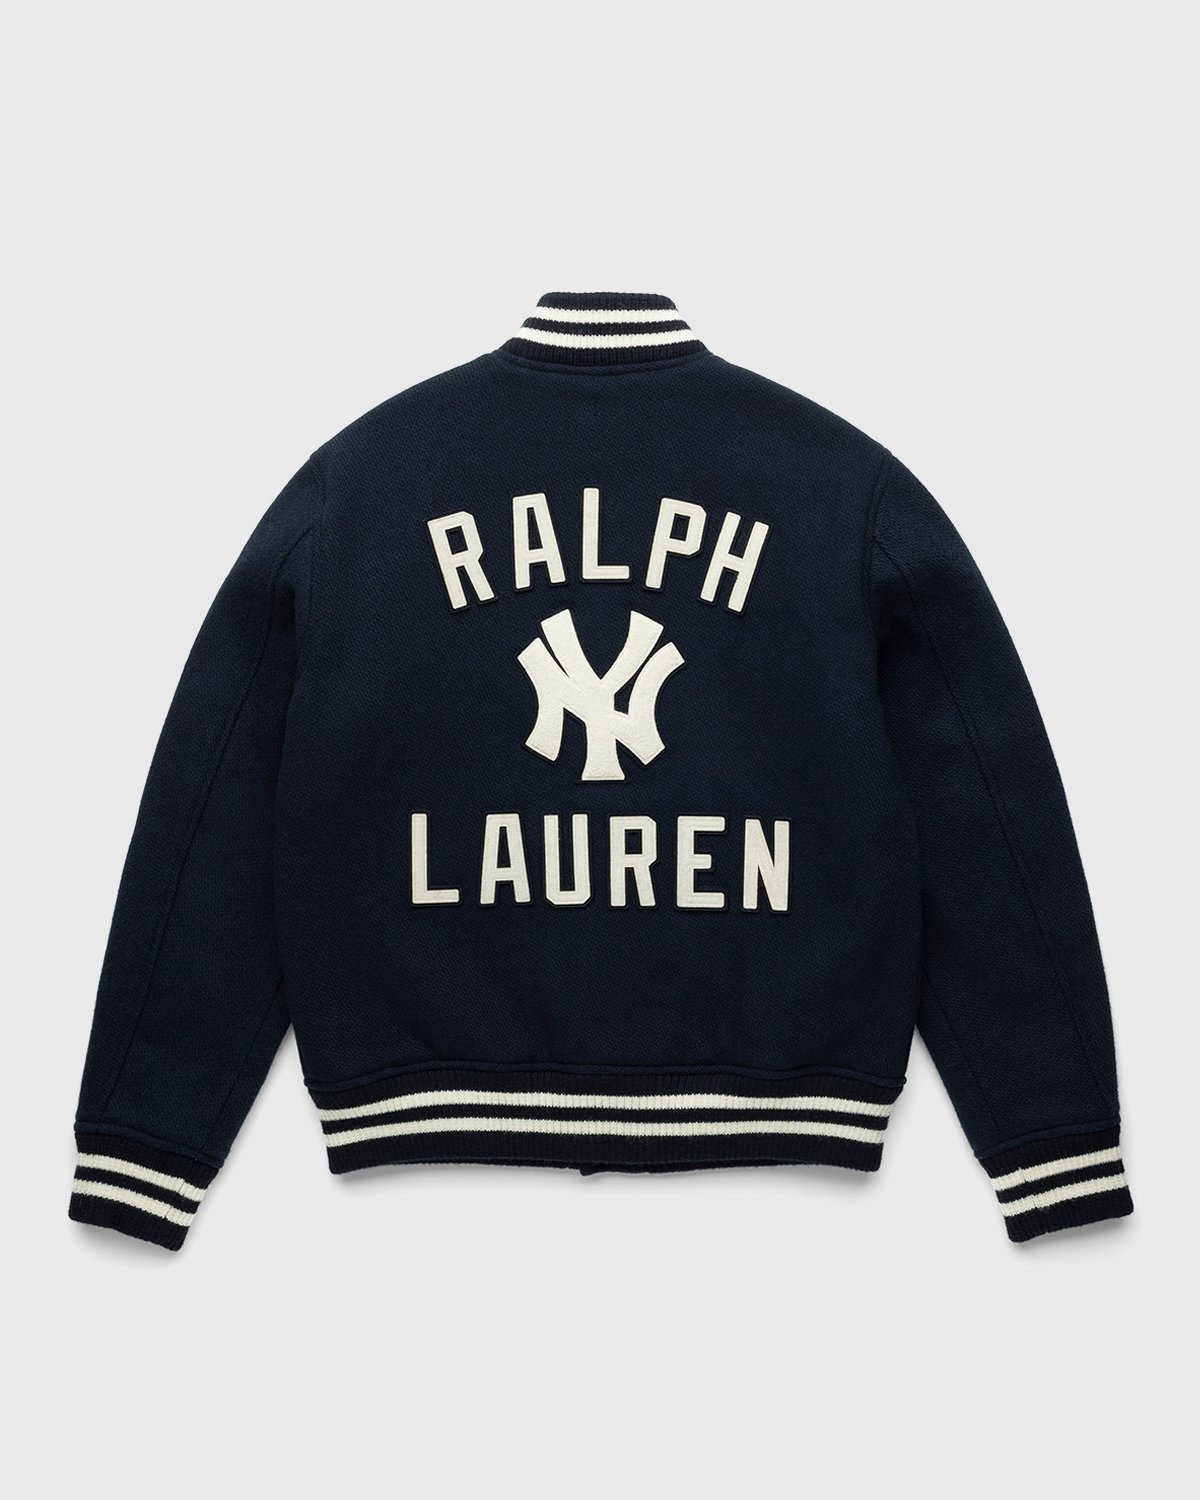 Genuine Merchandise NY Yankees Jacket